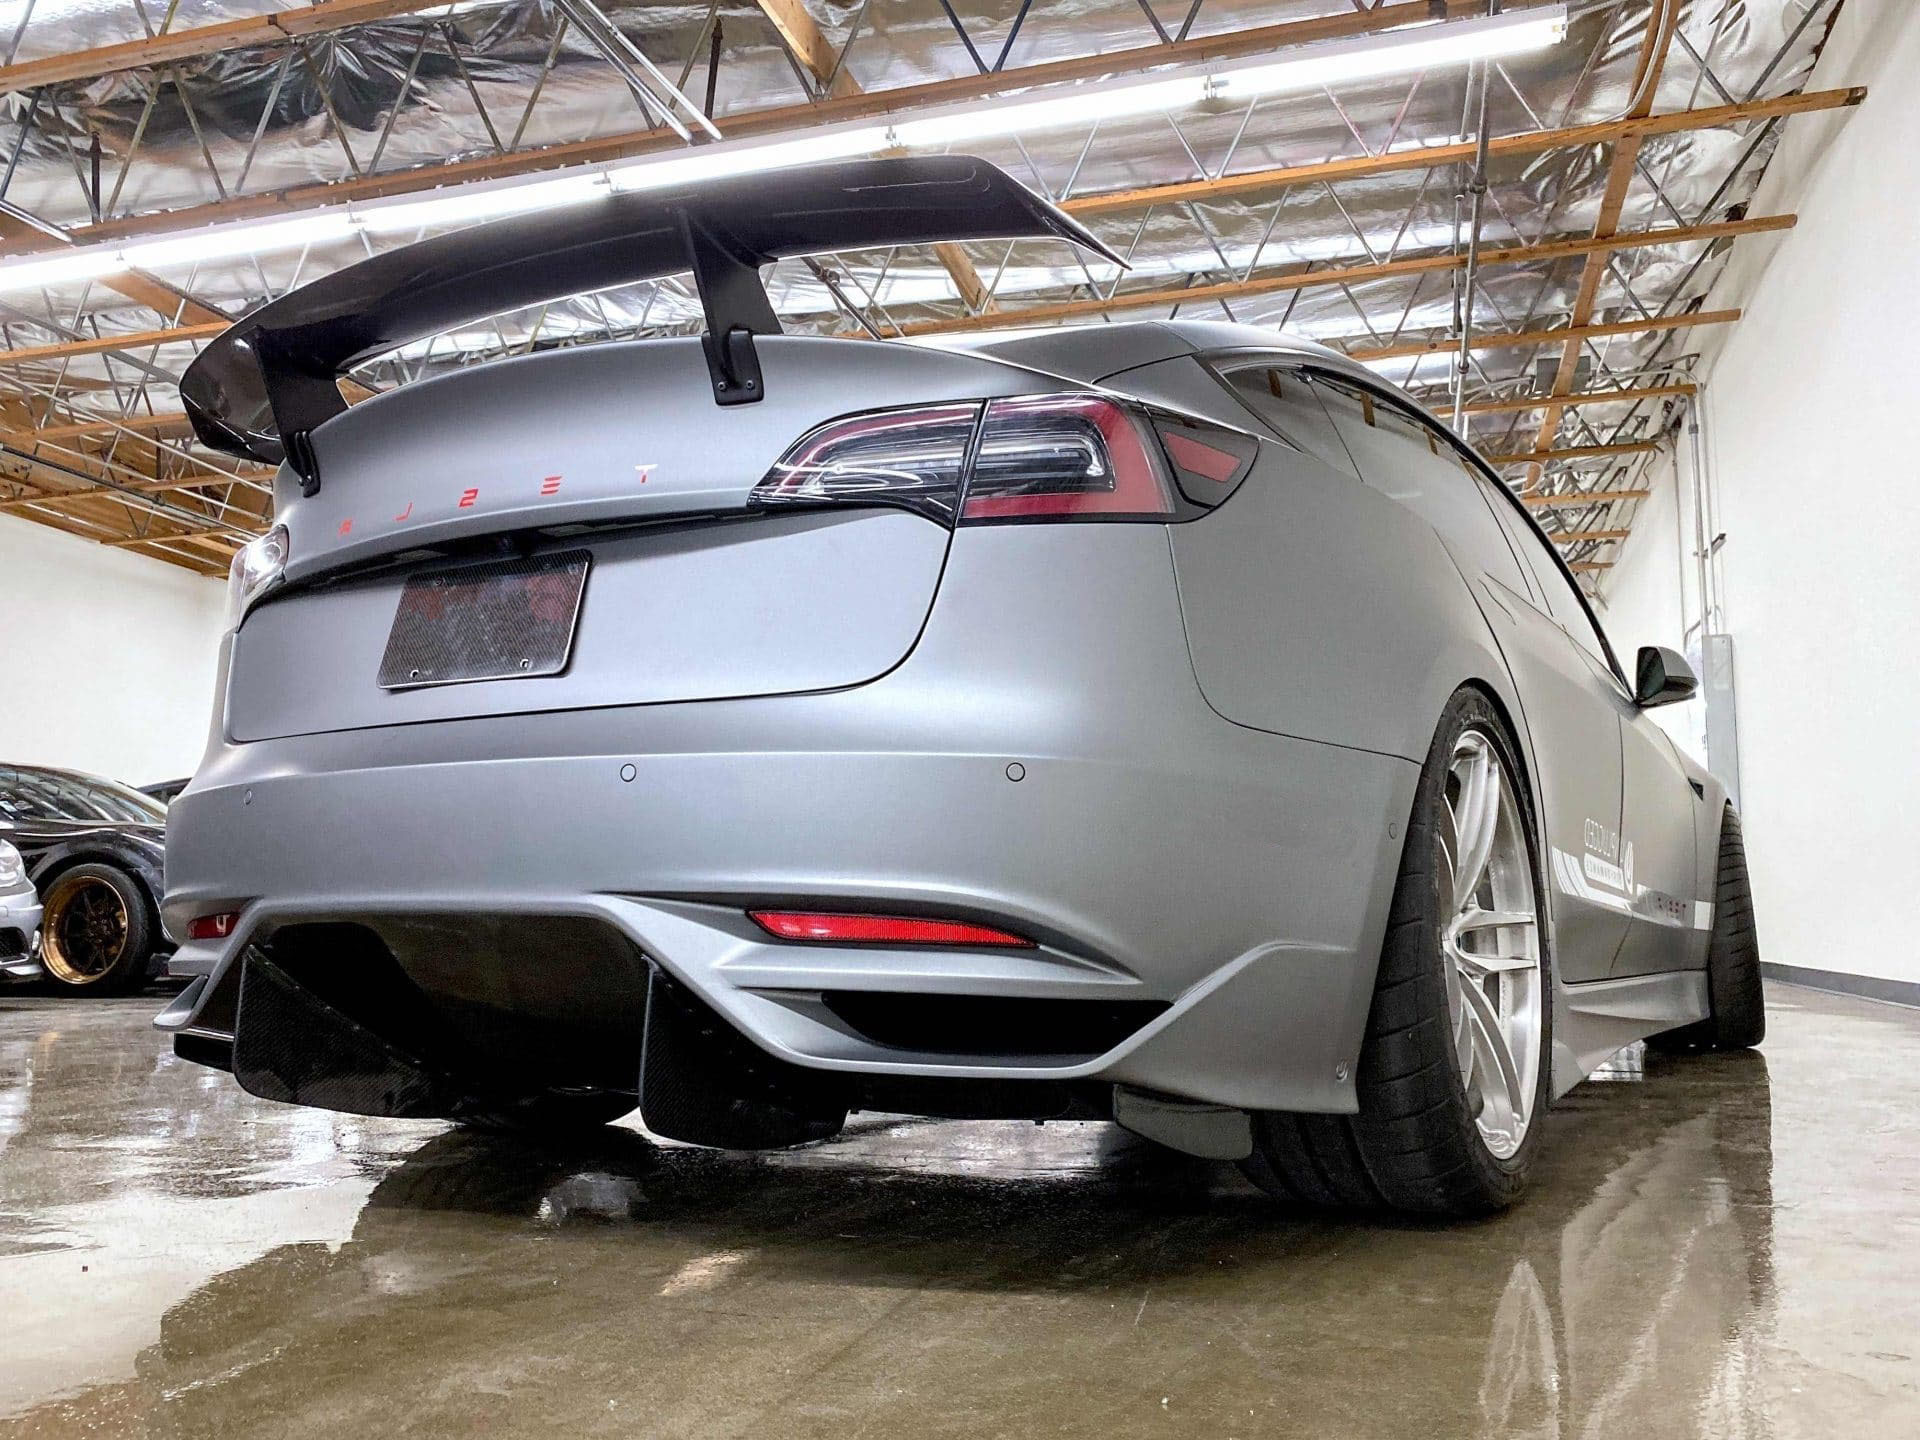 Tesla Model Y Unplugged Ascension-R Carbon Fiber Rear Wing